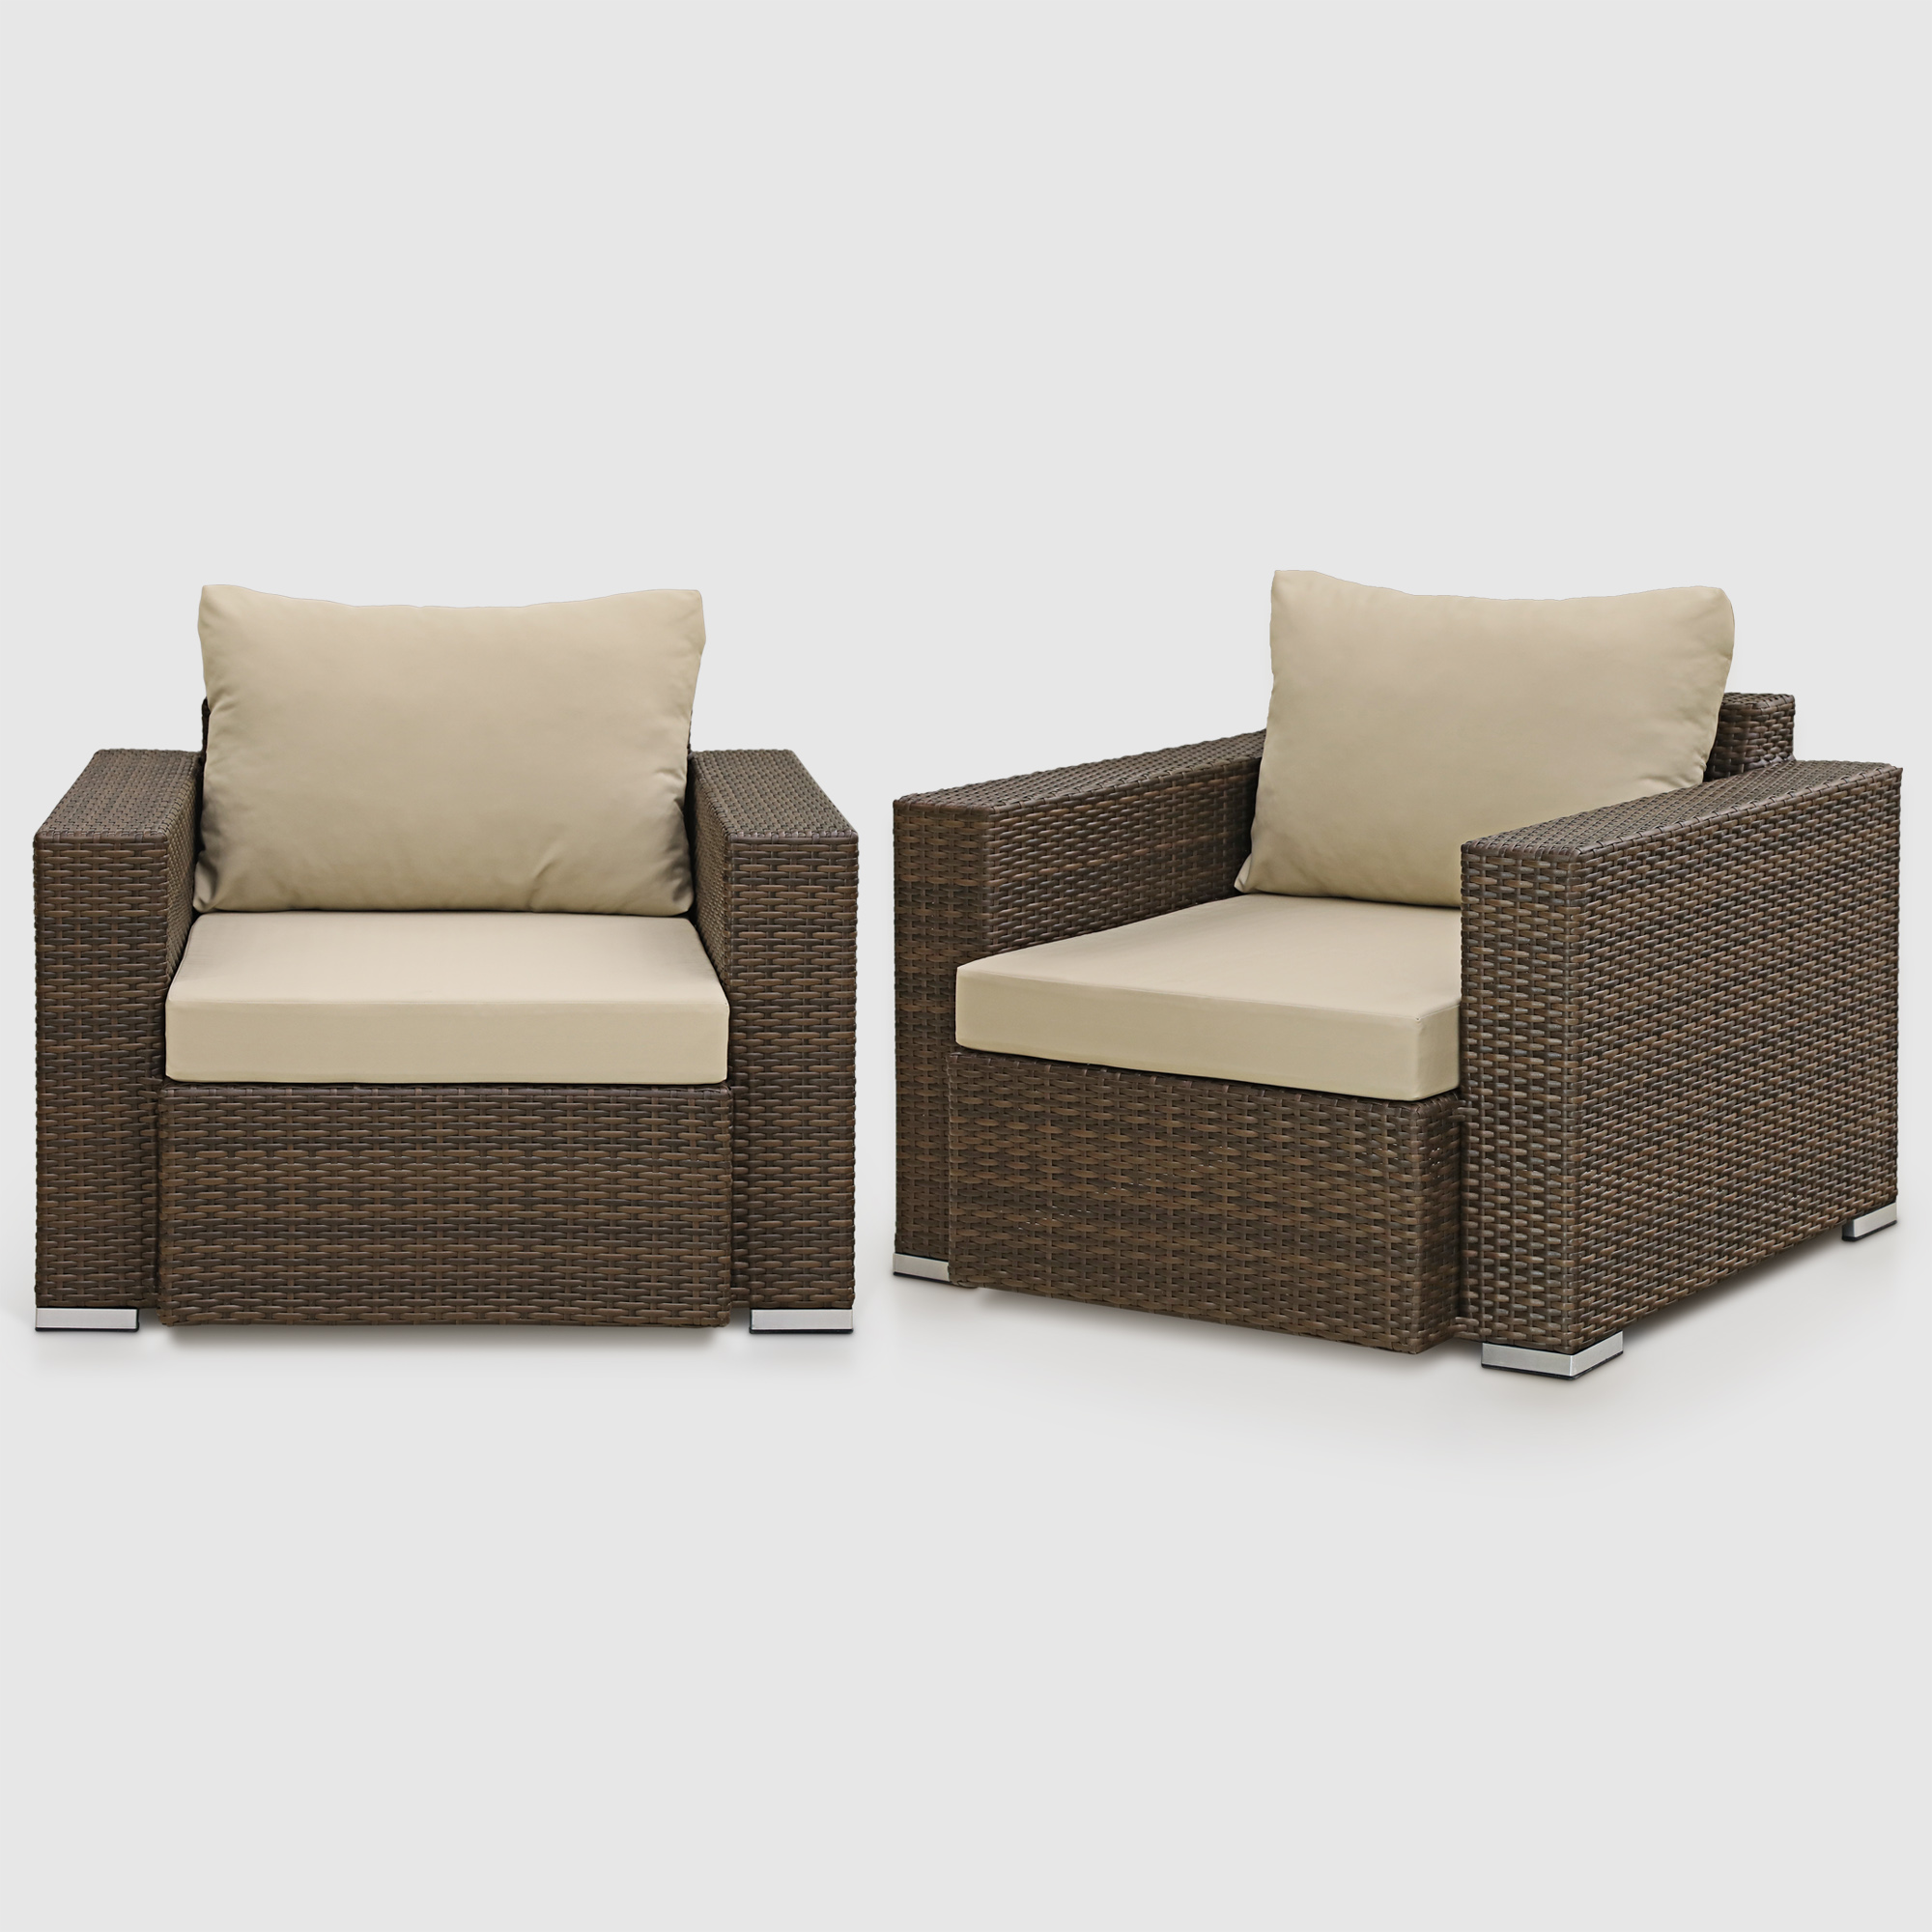 Комплект мебели Ns Rattan Cleo коричнево-бежевый 7 предметов, цвет коричневый, размер 199х68х72 - фото 10